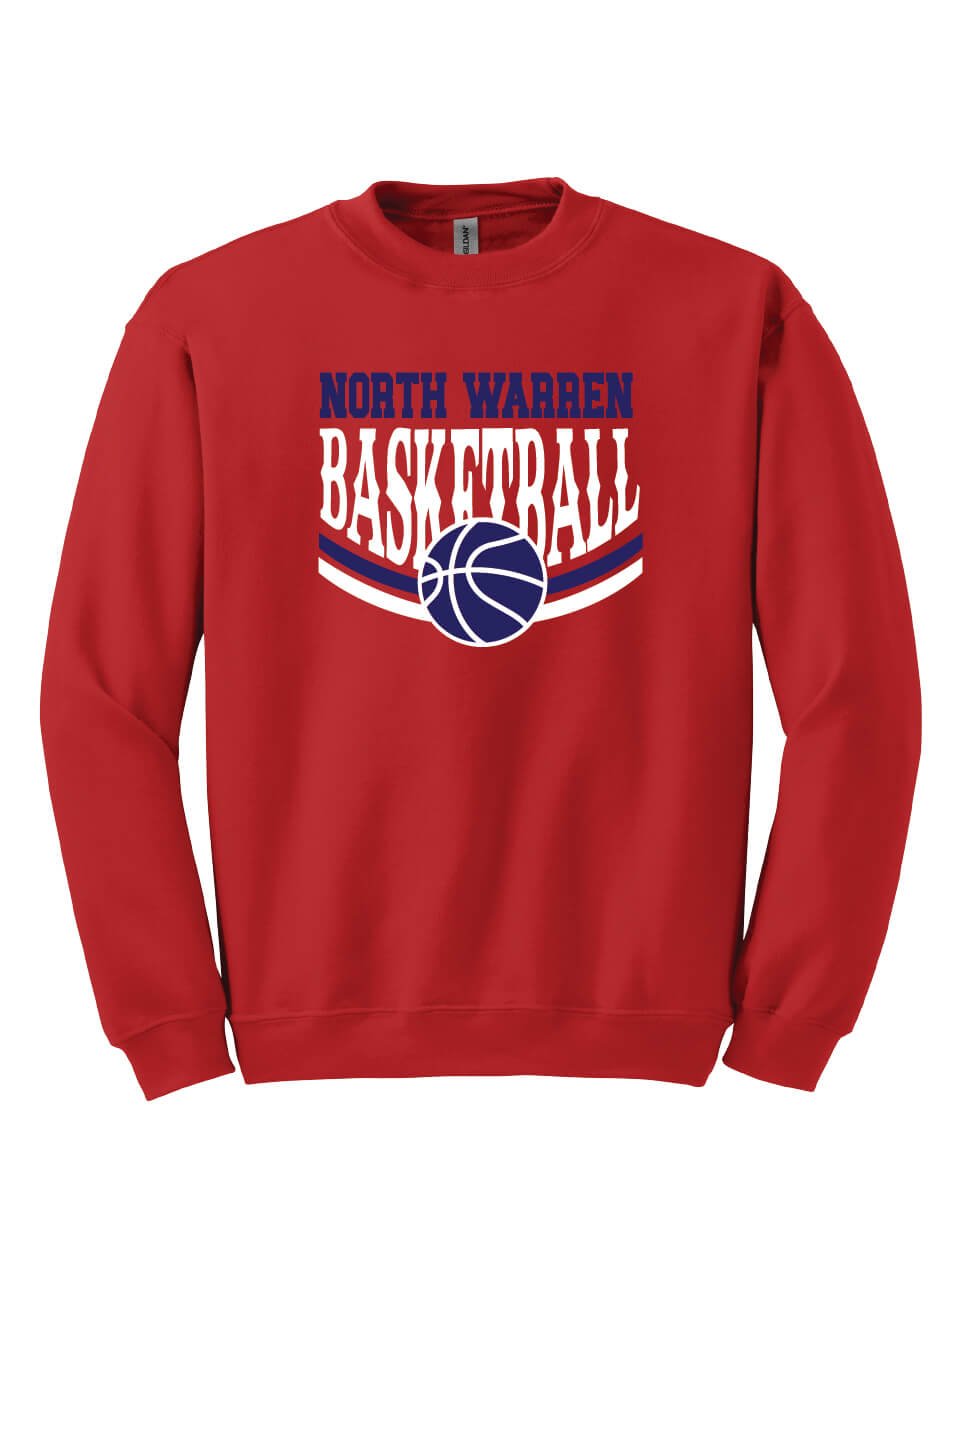 NW Basketball Crewneck Sweatshirt red